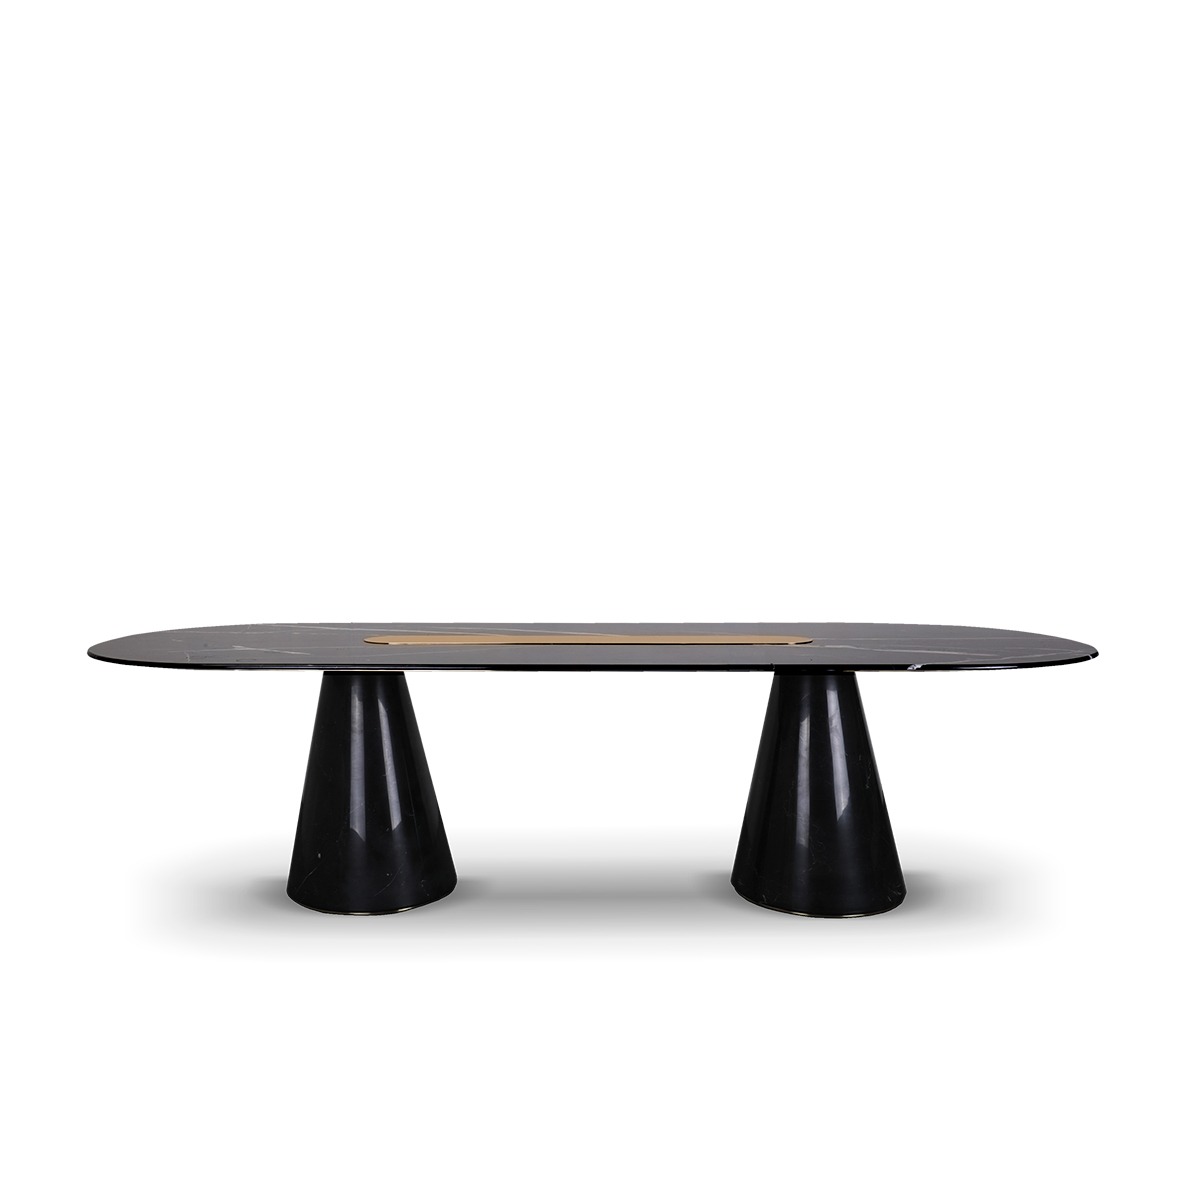 EH bertoia oval table 01 Bertoia Bar Table